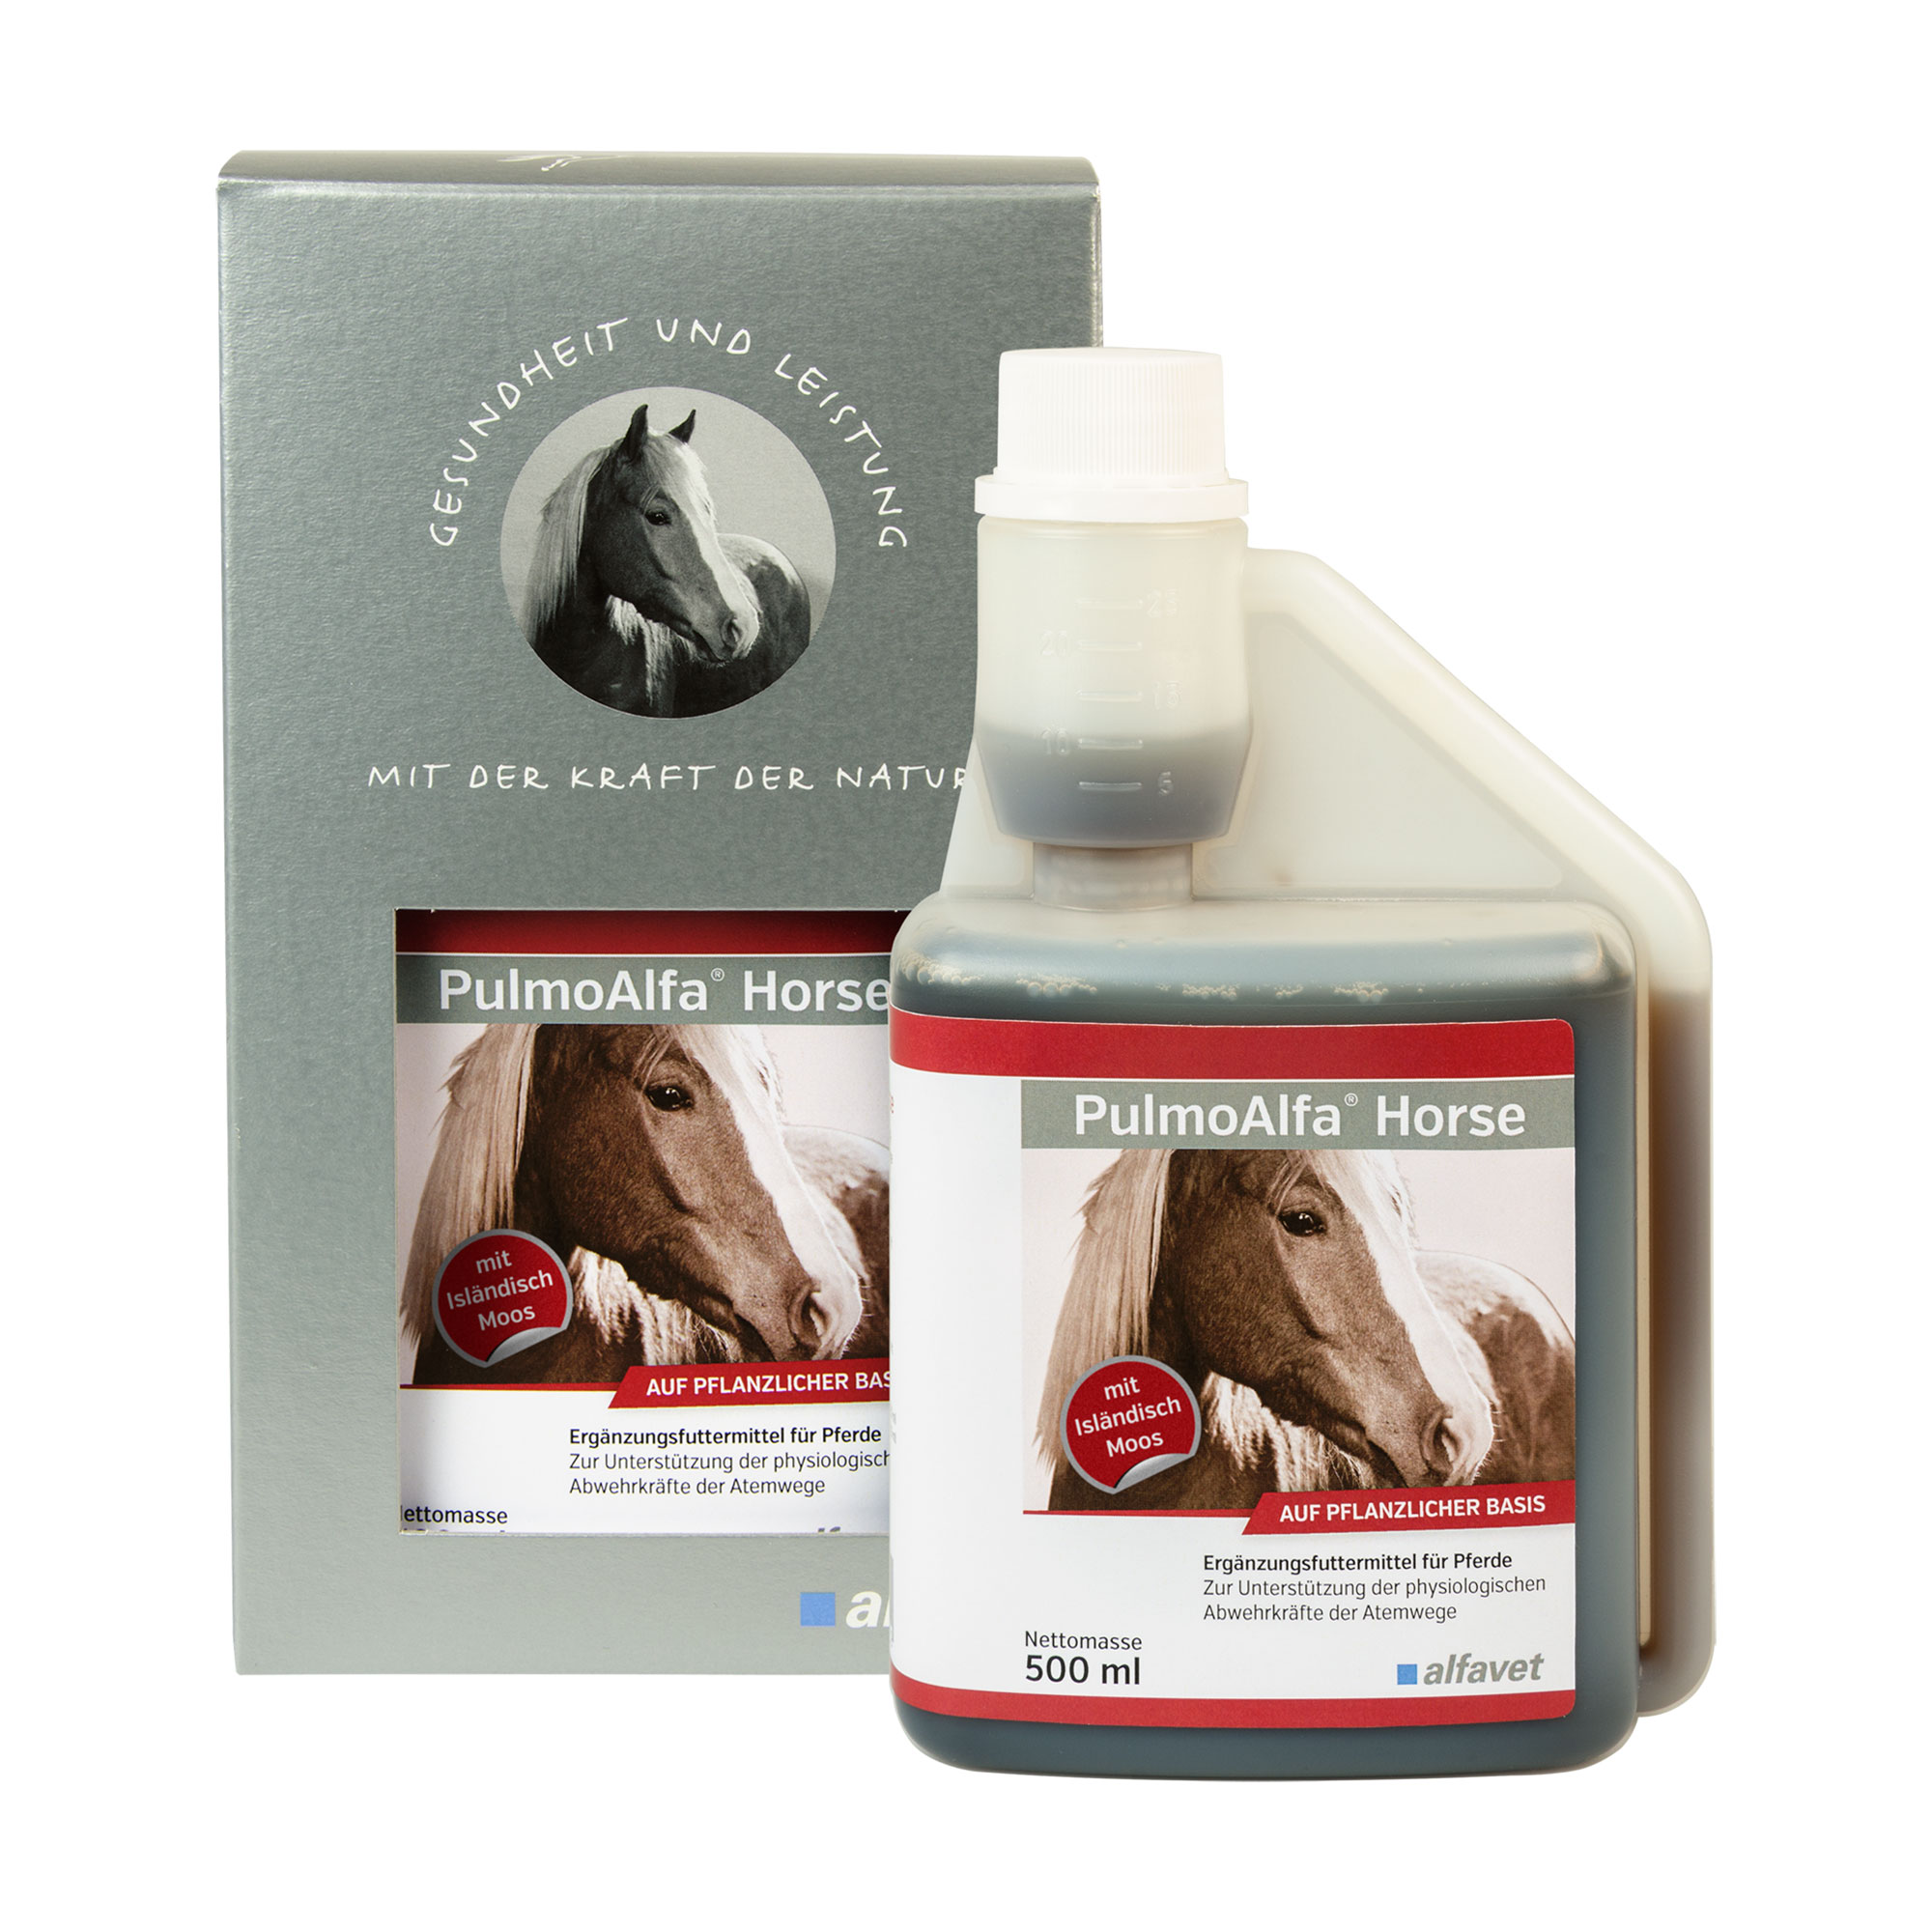 Ergänzungsfuttermittel für Pferde. Zur Unterstützung der physiologischen Abwehrkräfte der Atemwege.